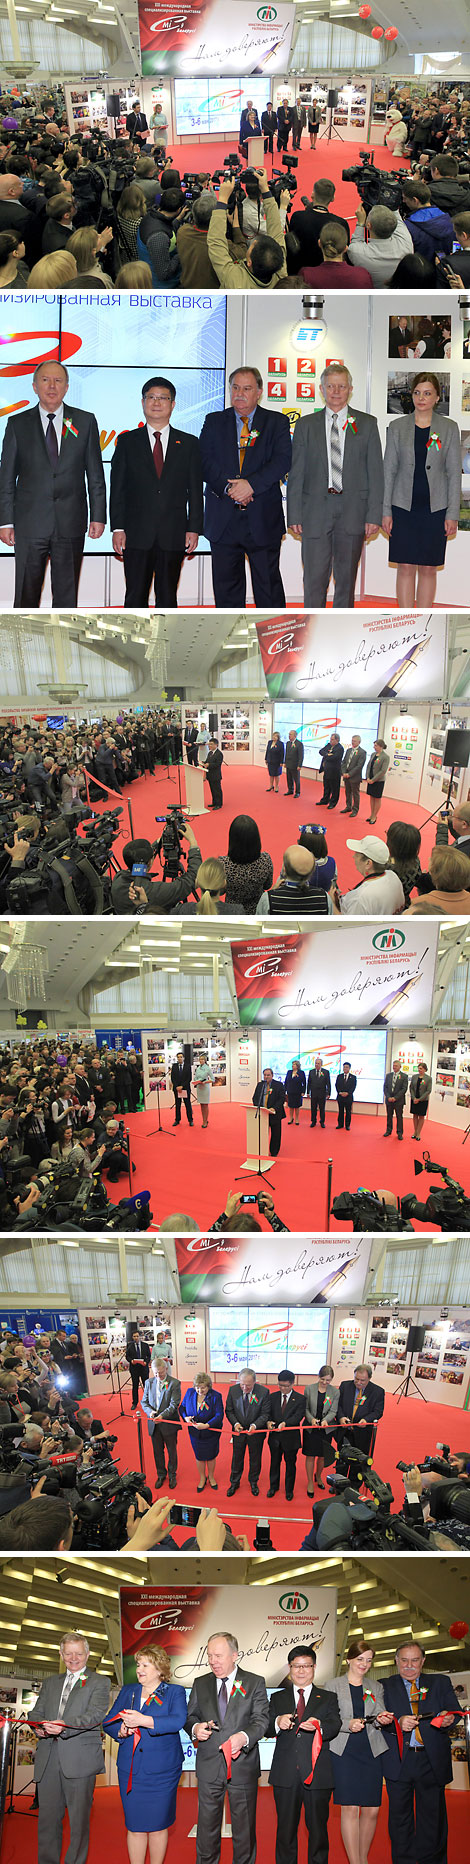 Mass Media in Belarus expo opens in Minsk